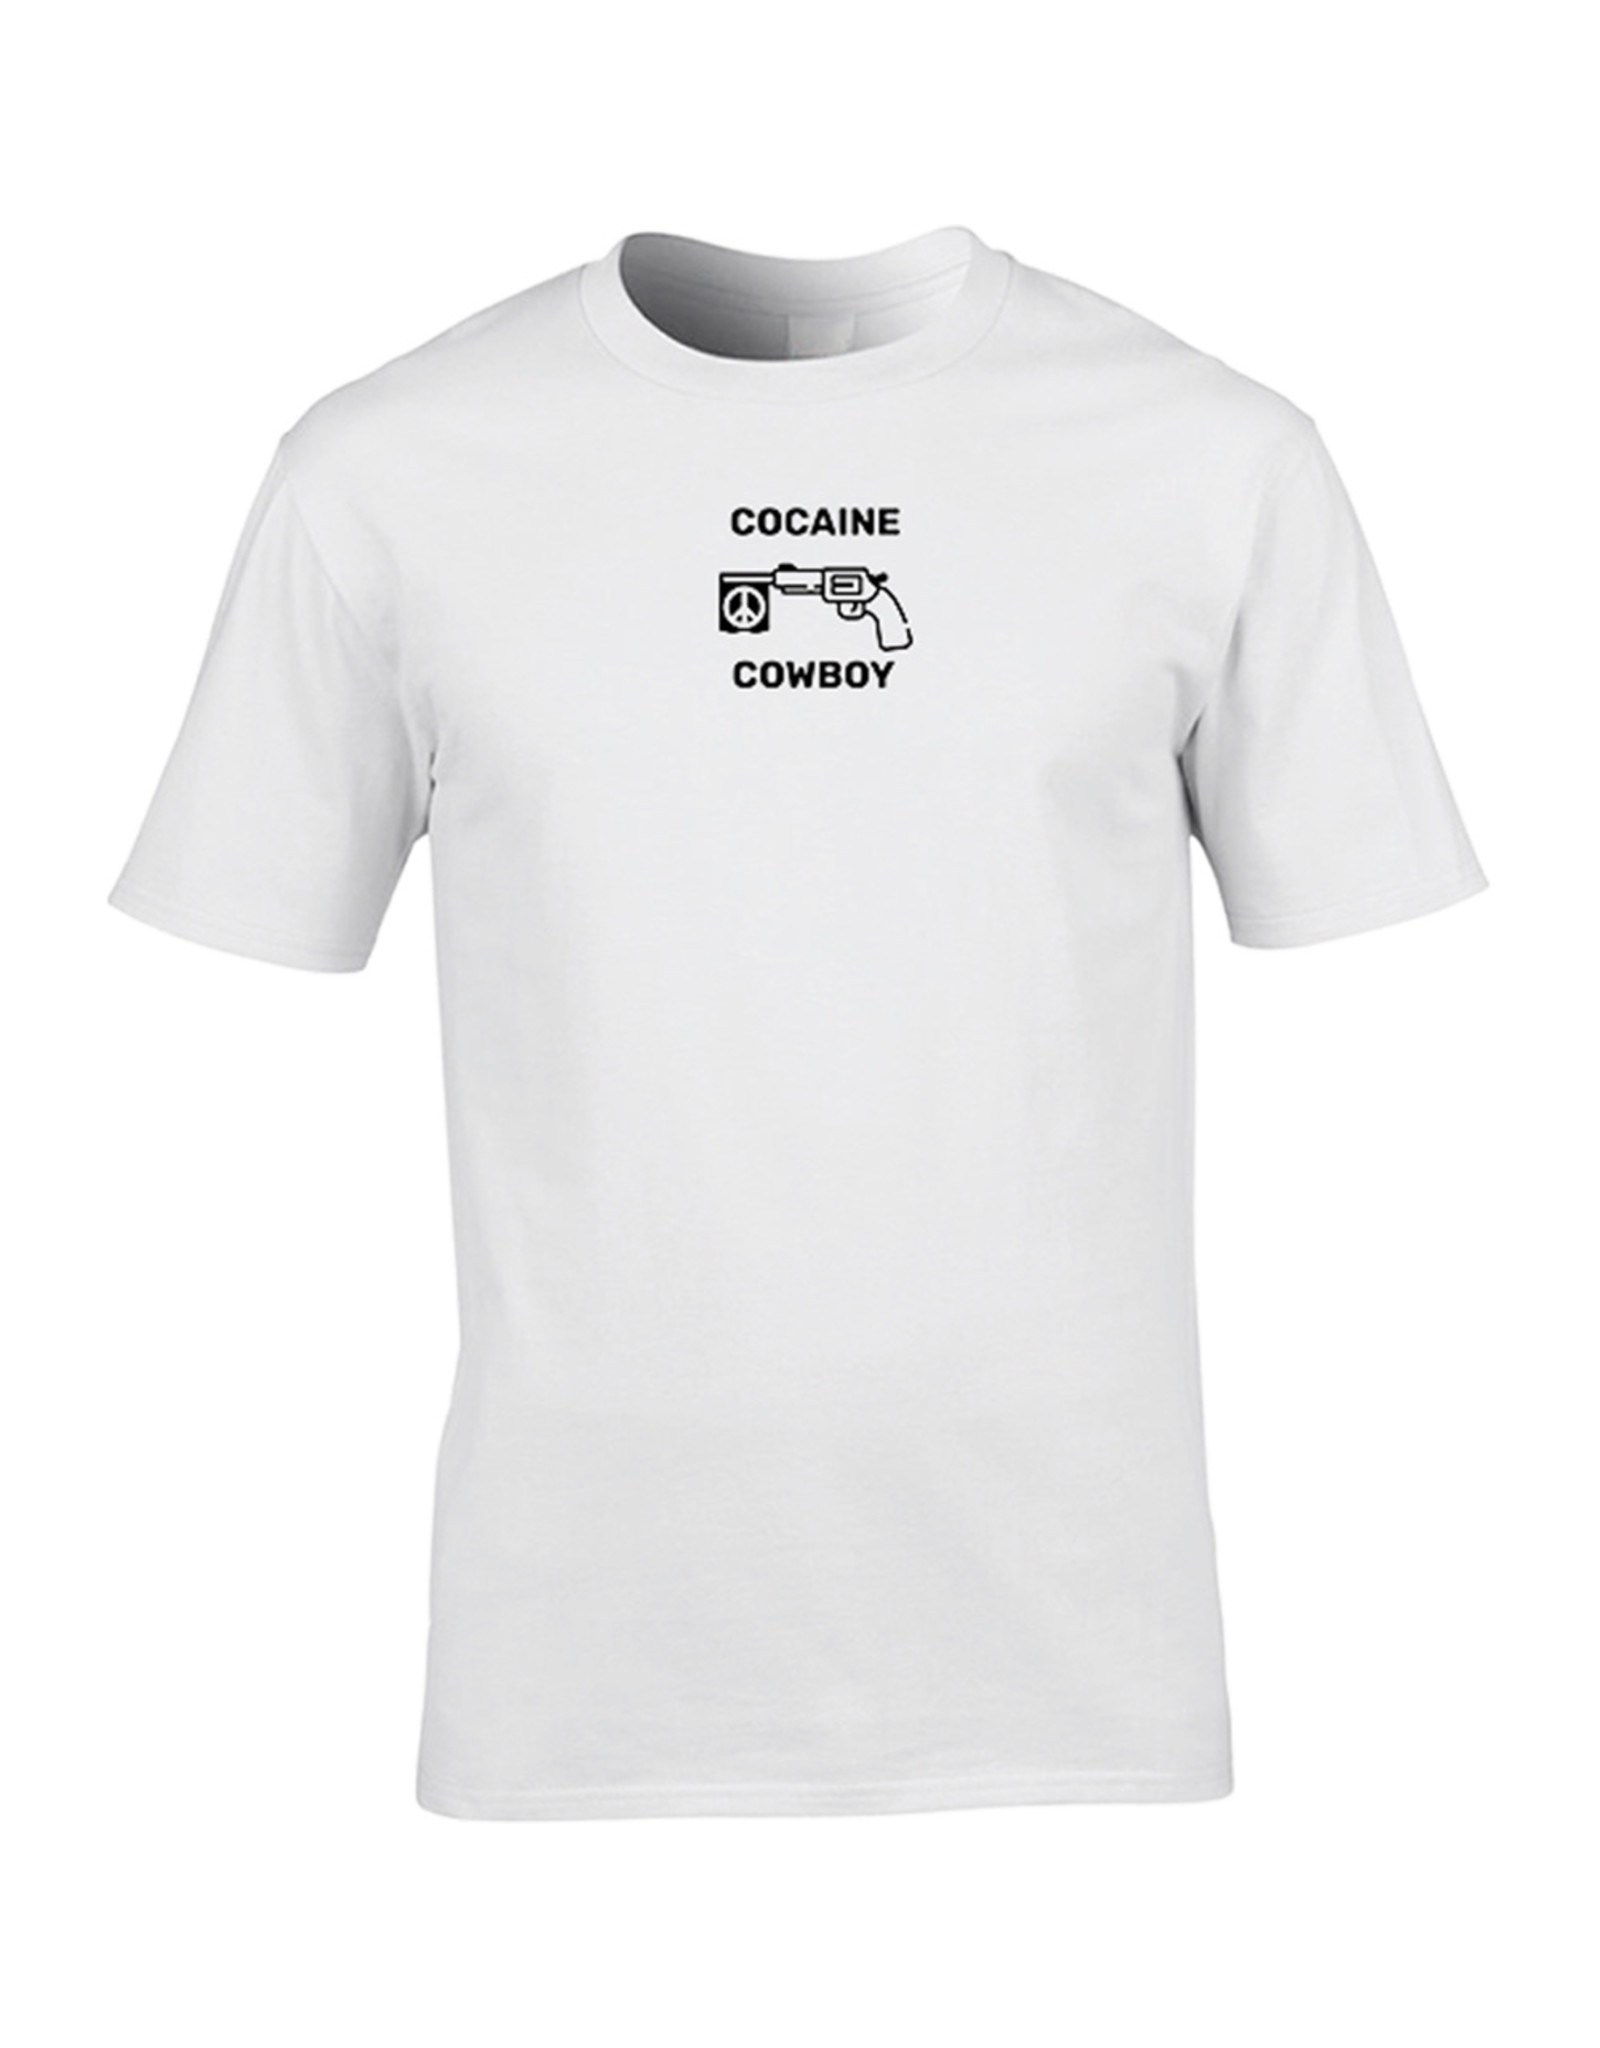 Festicap T-Shirt Cocaine Cowboy | Soft Cotton | Handmade by us